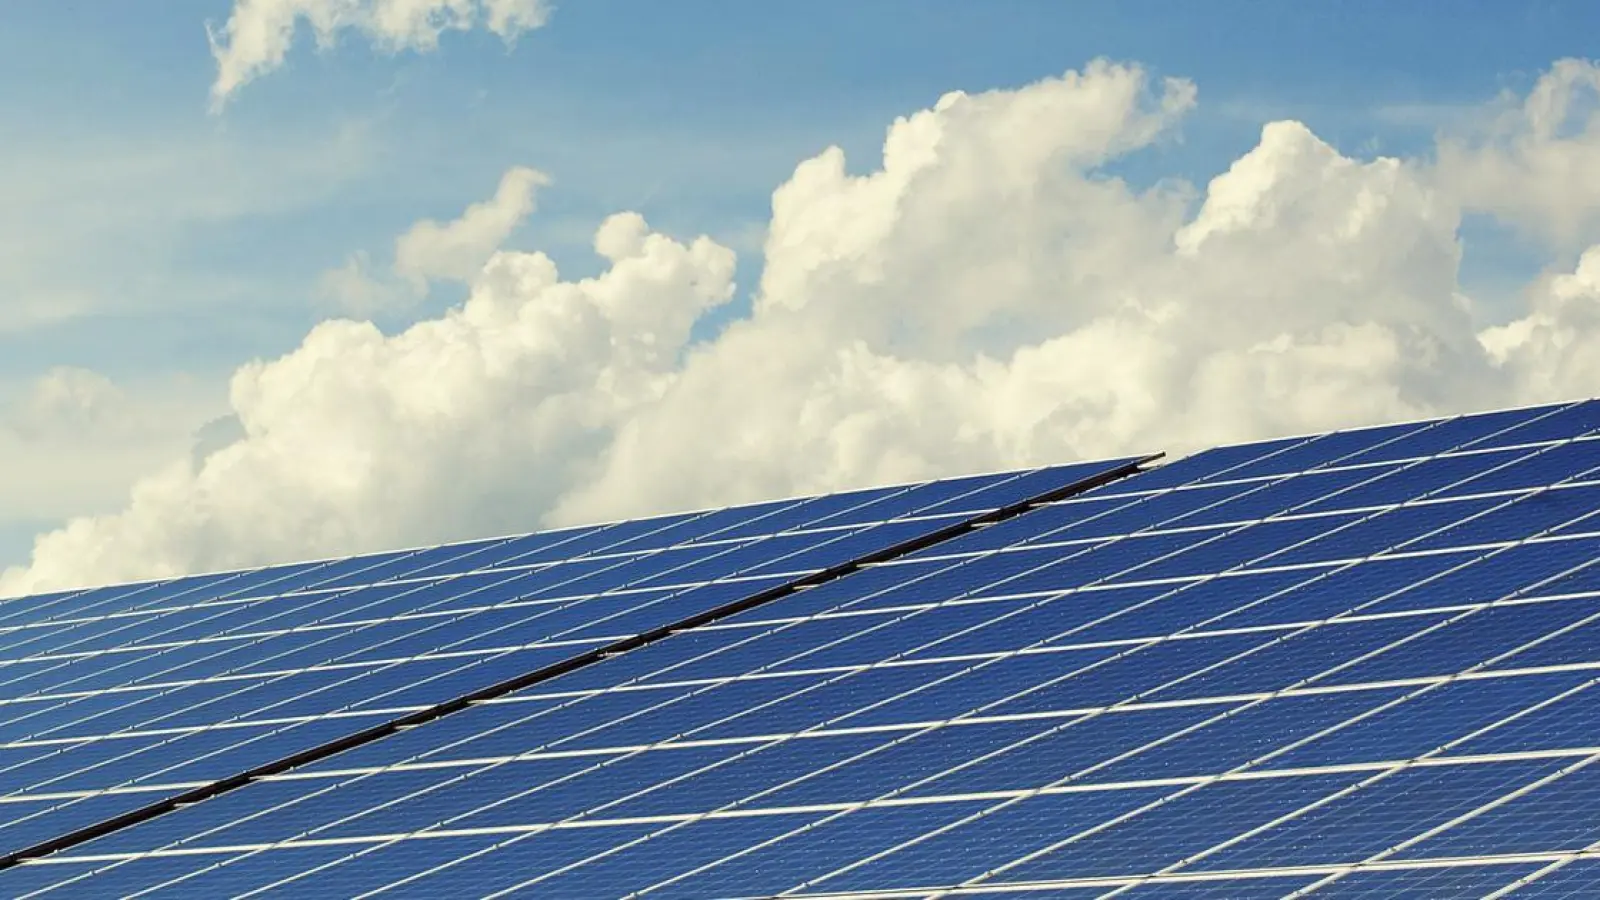 Klimaschutzsymposium in Bayreuth will Sonnenenergie stärken (Foto: pixabay/andreas160578)